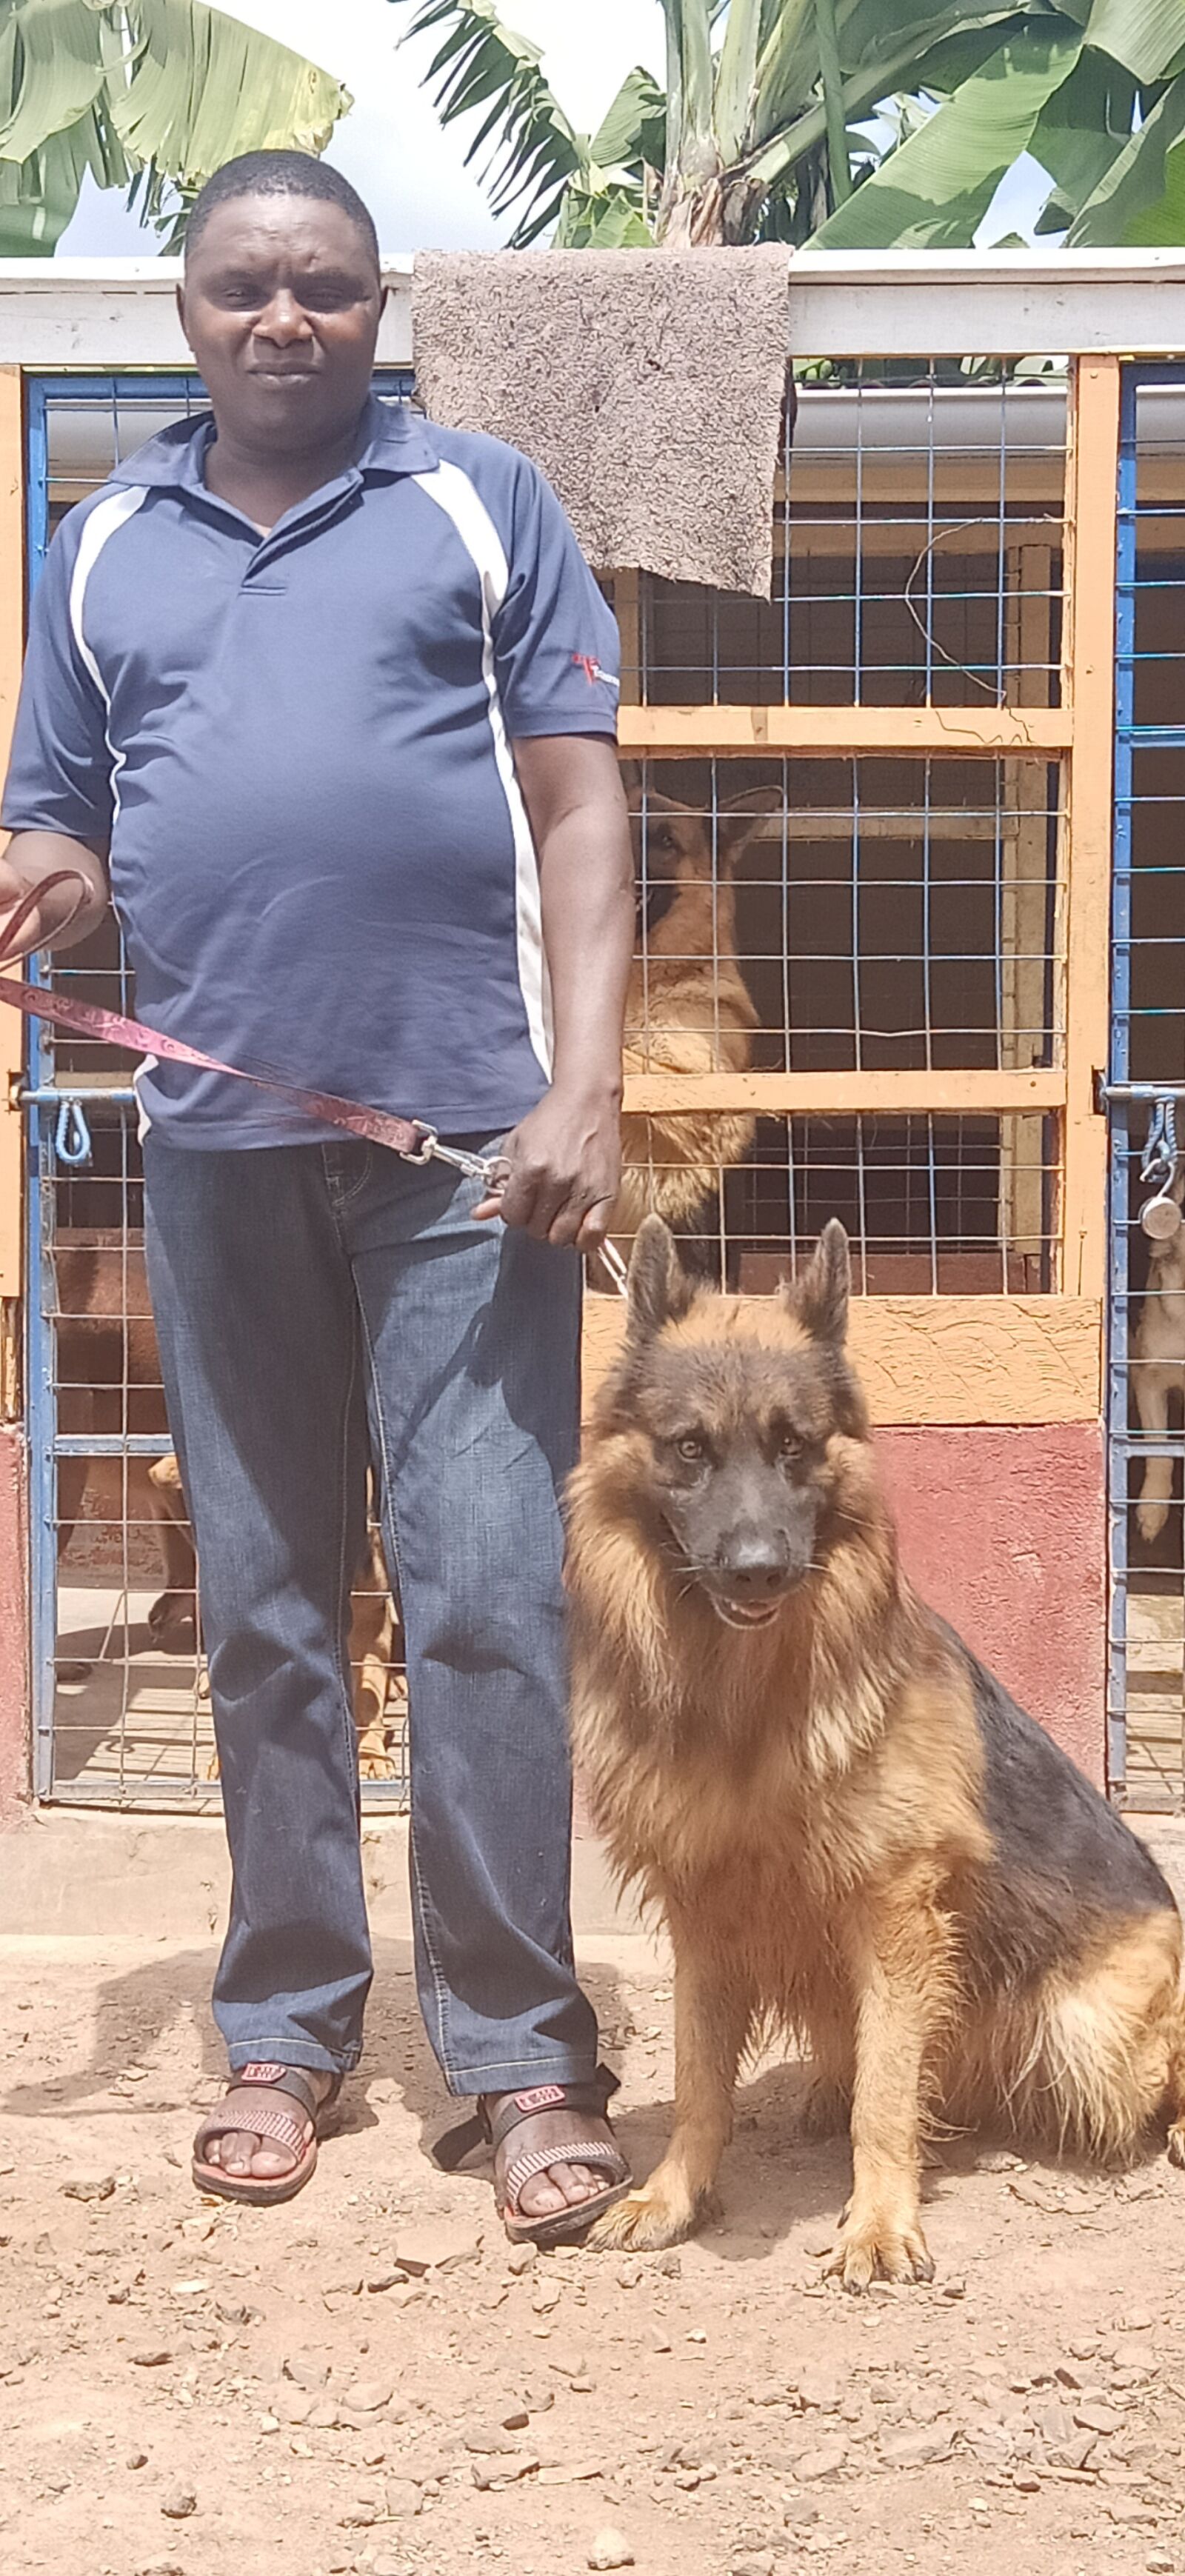 OPPO F11 sample photo. Dog, breeder, kenya photography